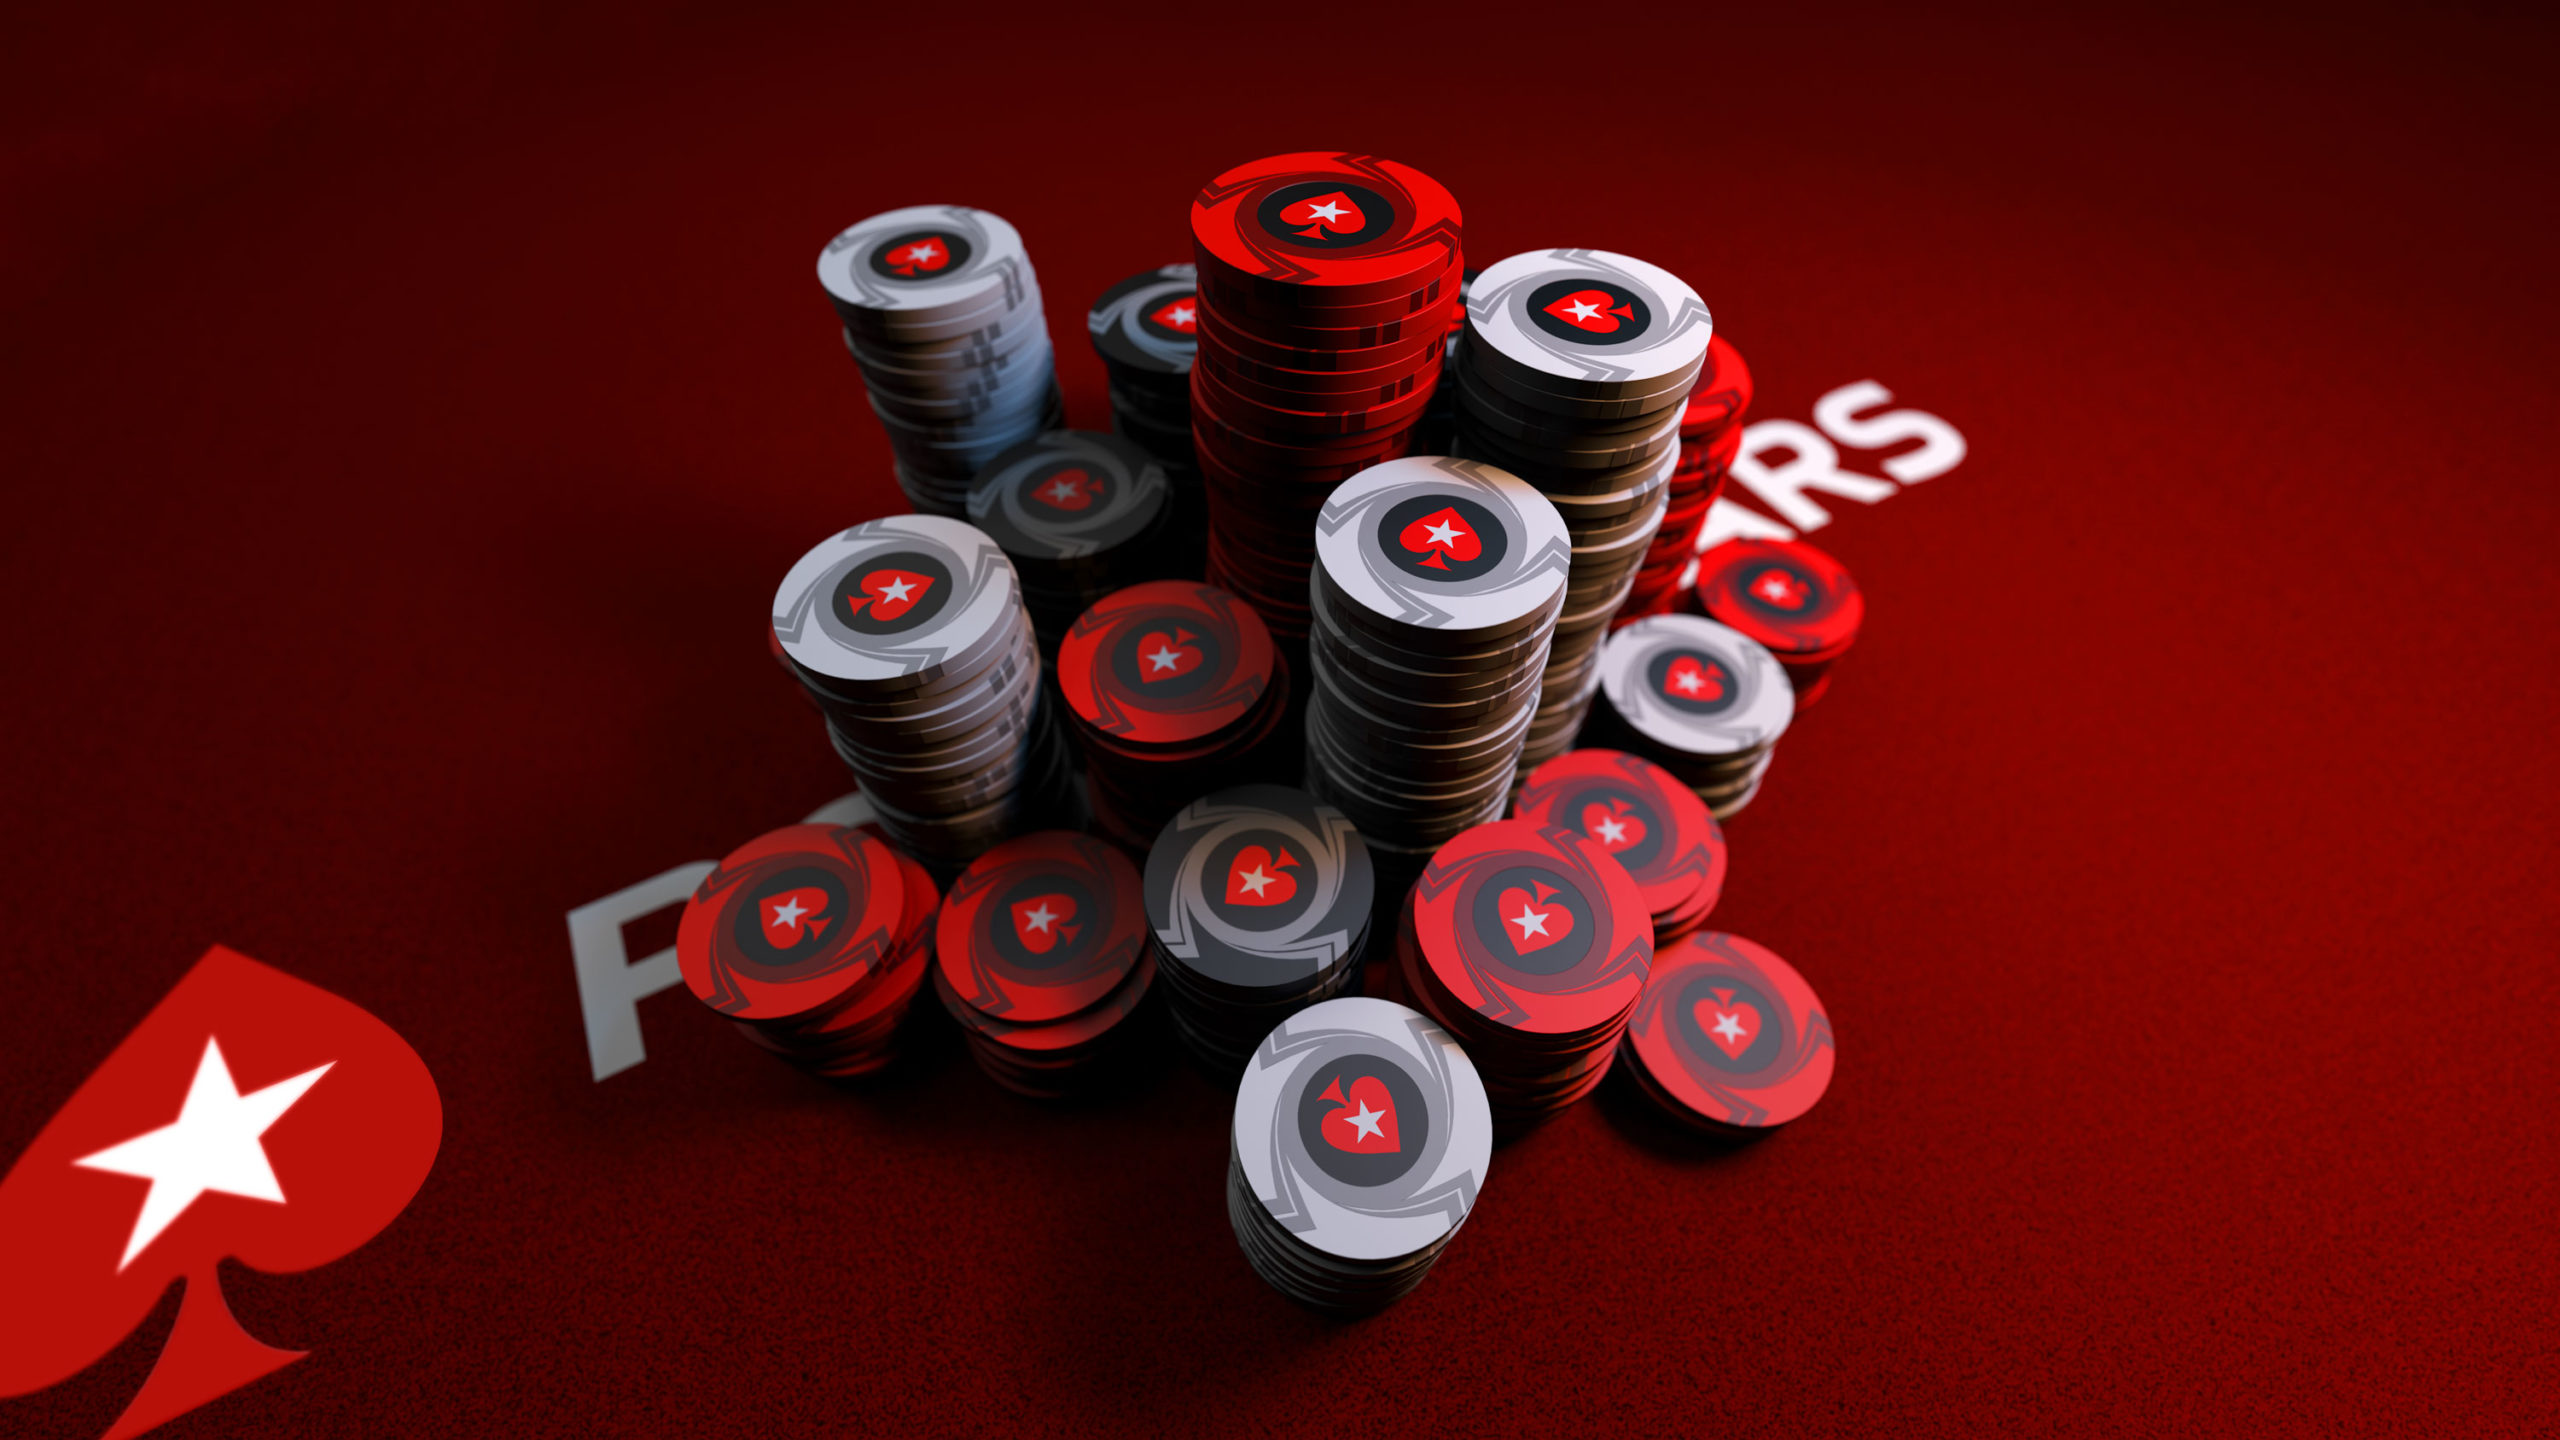 caesars online casino bonus code